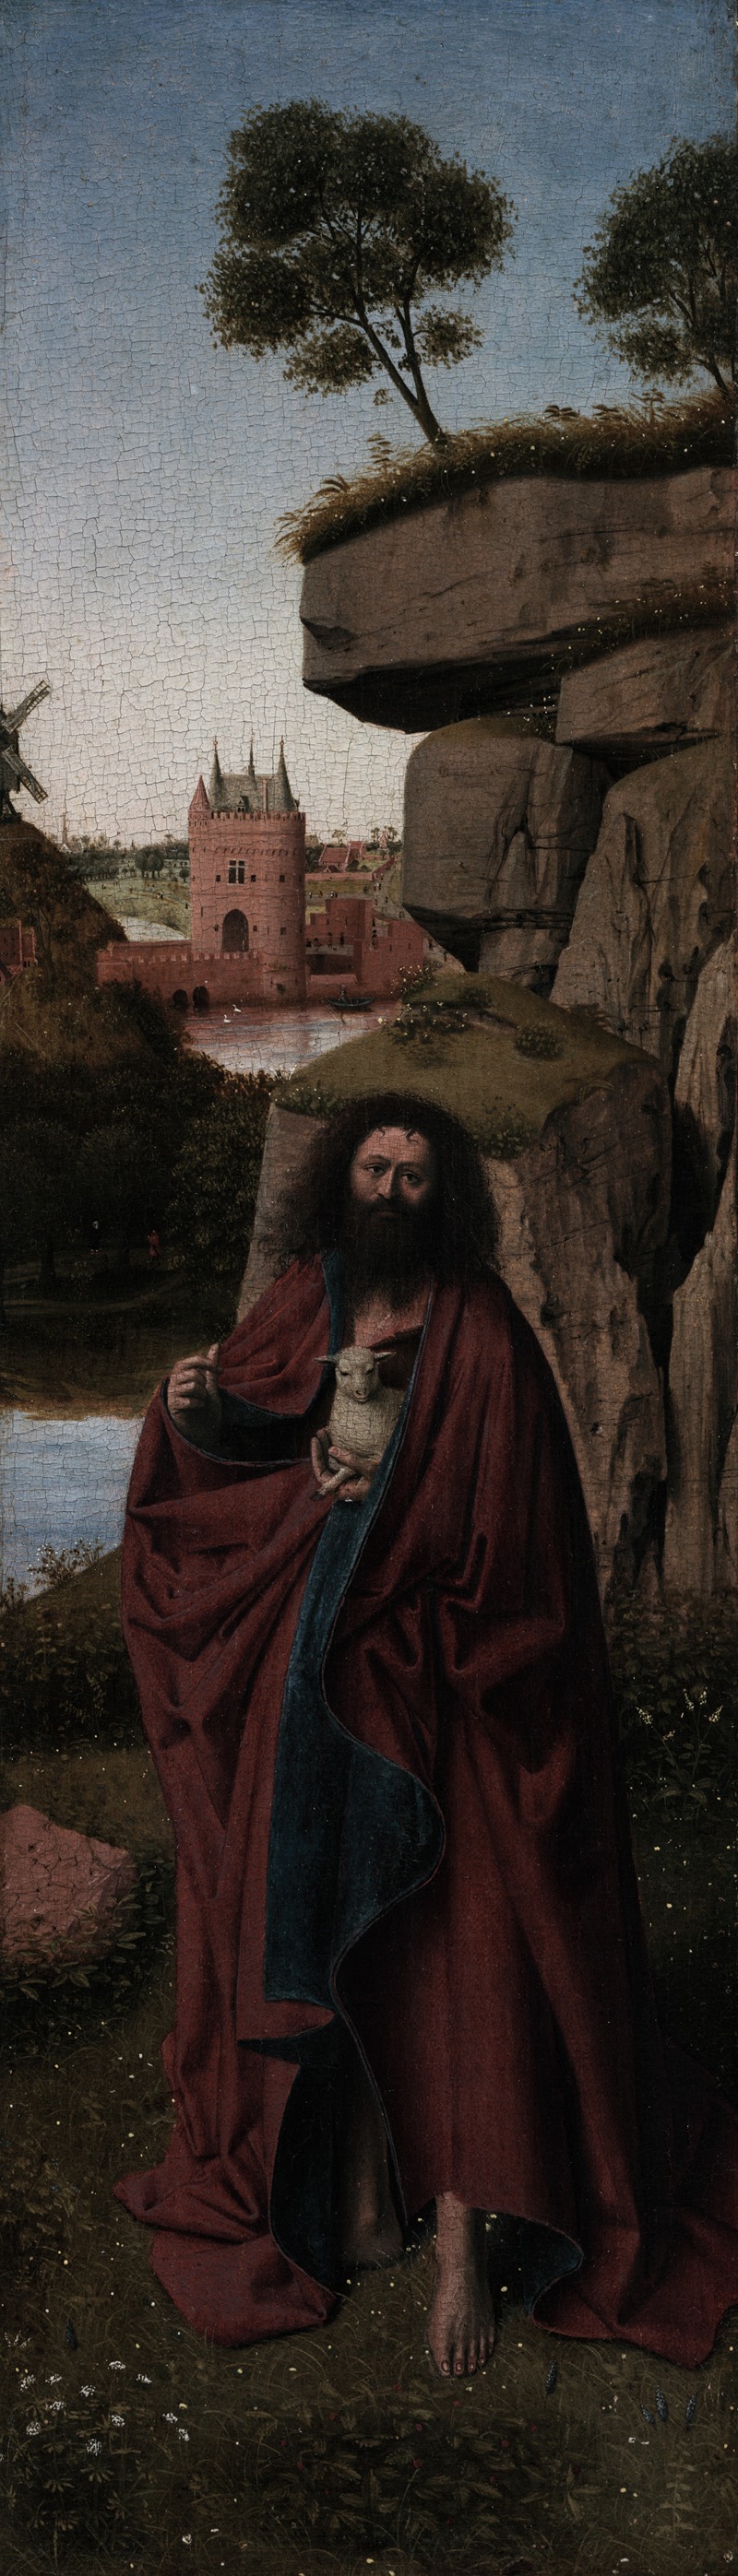 Petrus Christus - Saint John the Baptist in a Landscape